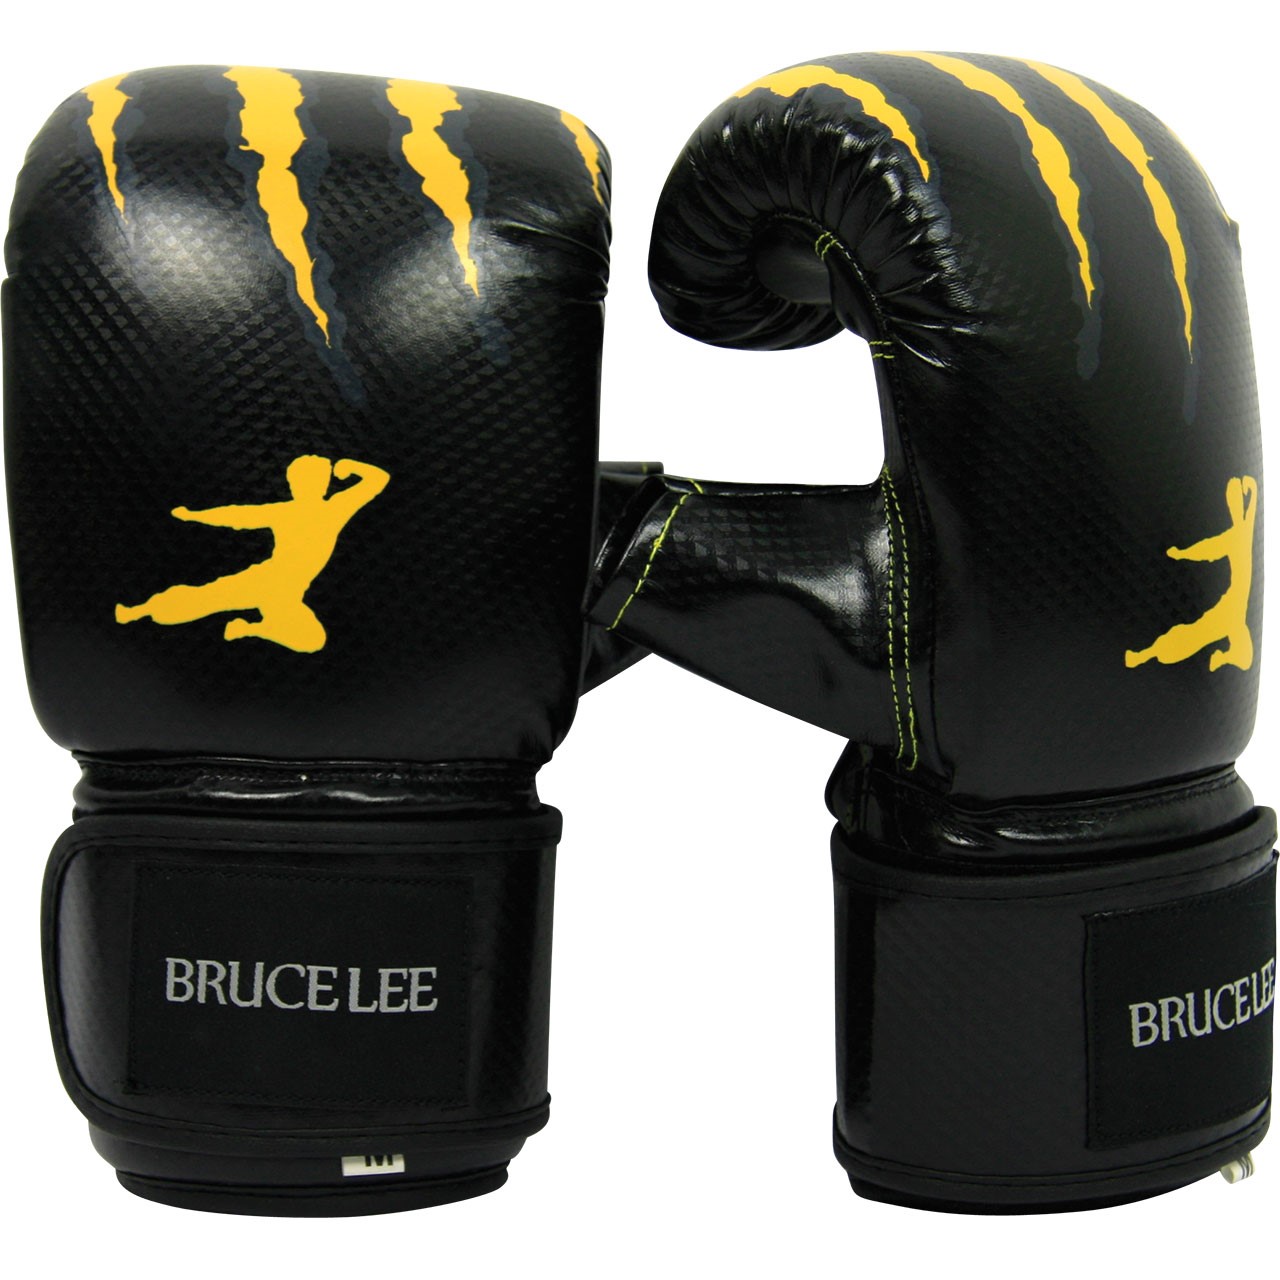 Boxerské rukavice na pytel nebo sparring M BRUCE LEE